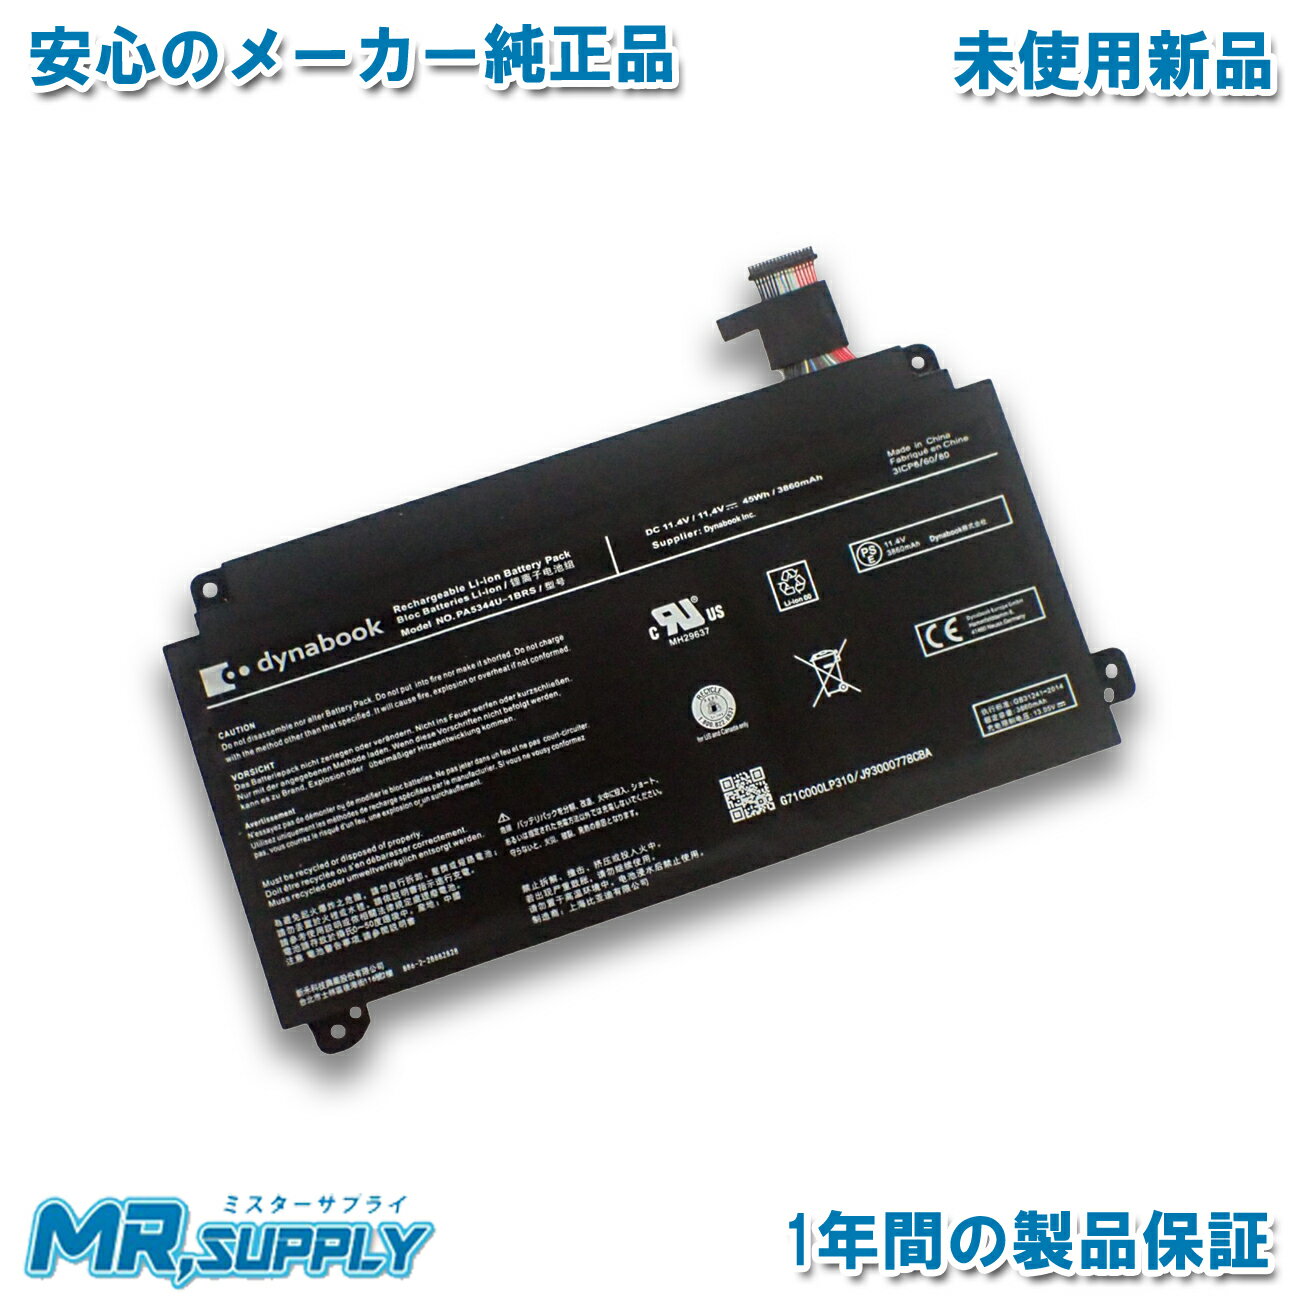 minshi 新品 NEC PC-LS550FS51YB 互換バッテリー 対応 高品質交換用電池パック PSE認証 1年間保証 2600mAh